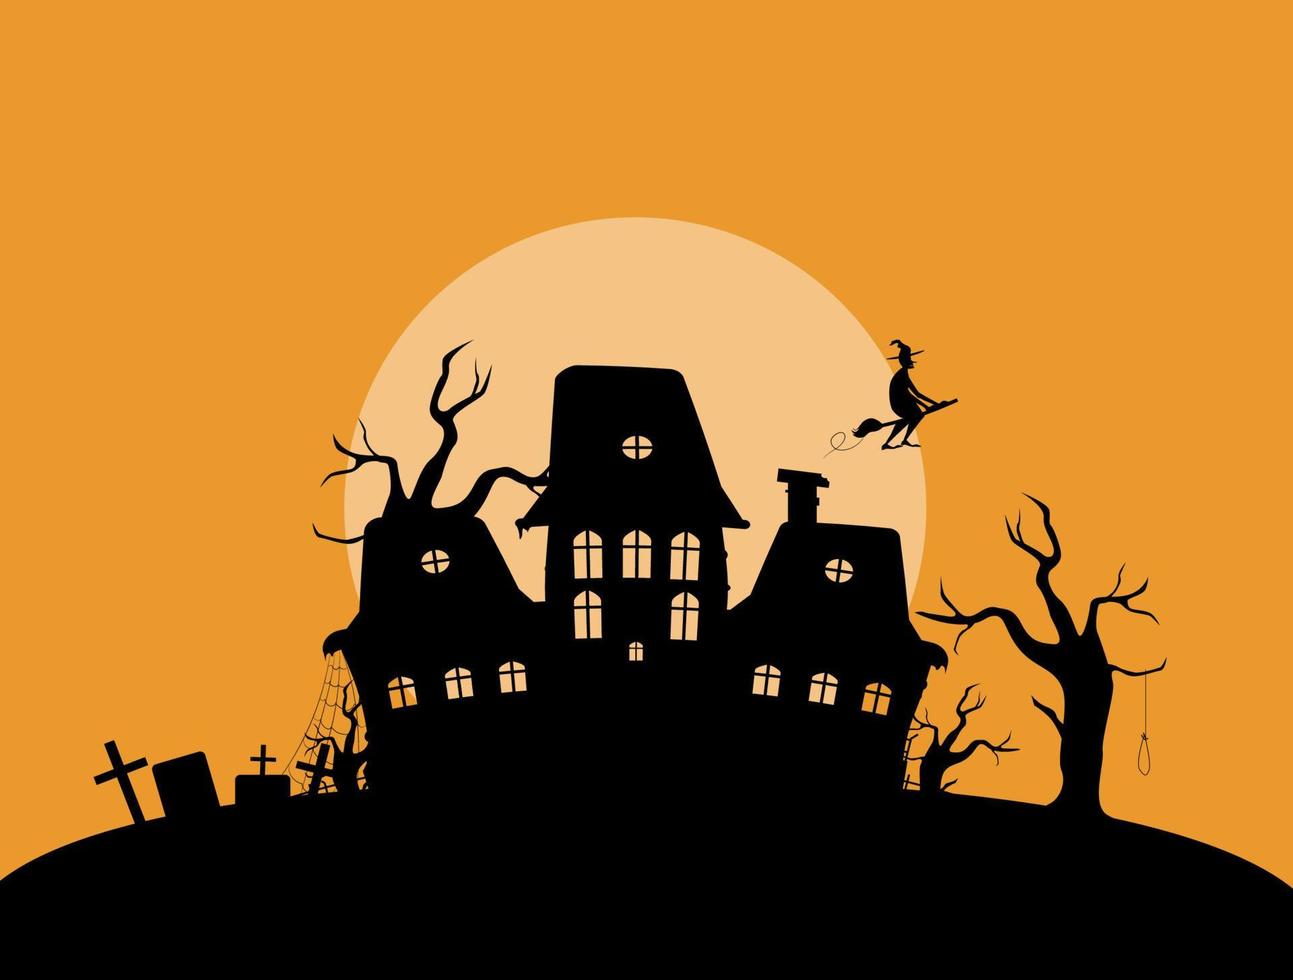 maison mystique abandonnée dans l'illustration du cimetière. silhouette de vieux palais fantasmagorique avec des arbres secs et des pierres tombales avec balai de vecteur de sorcière volante.